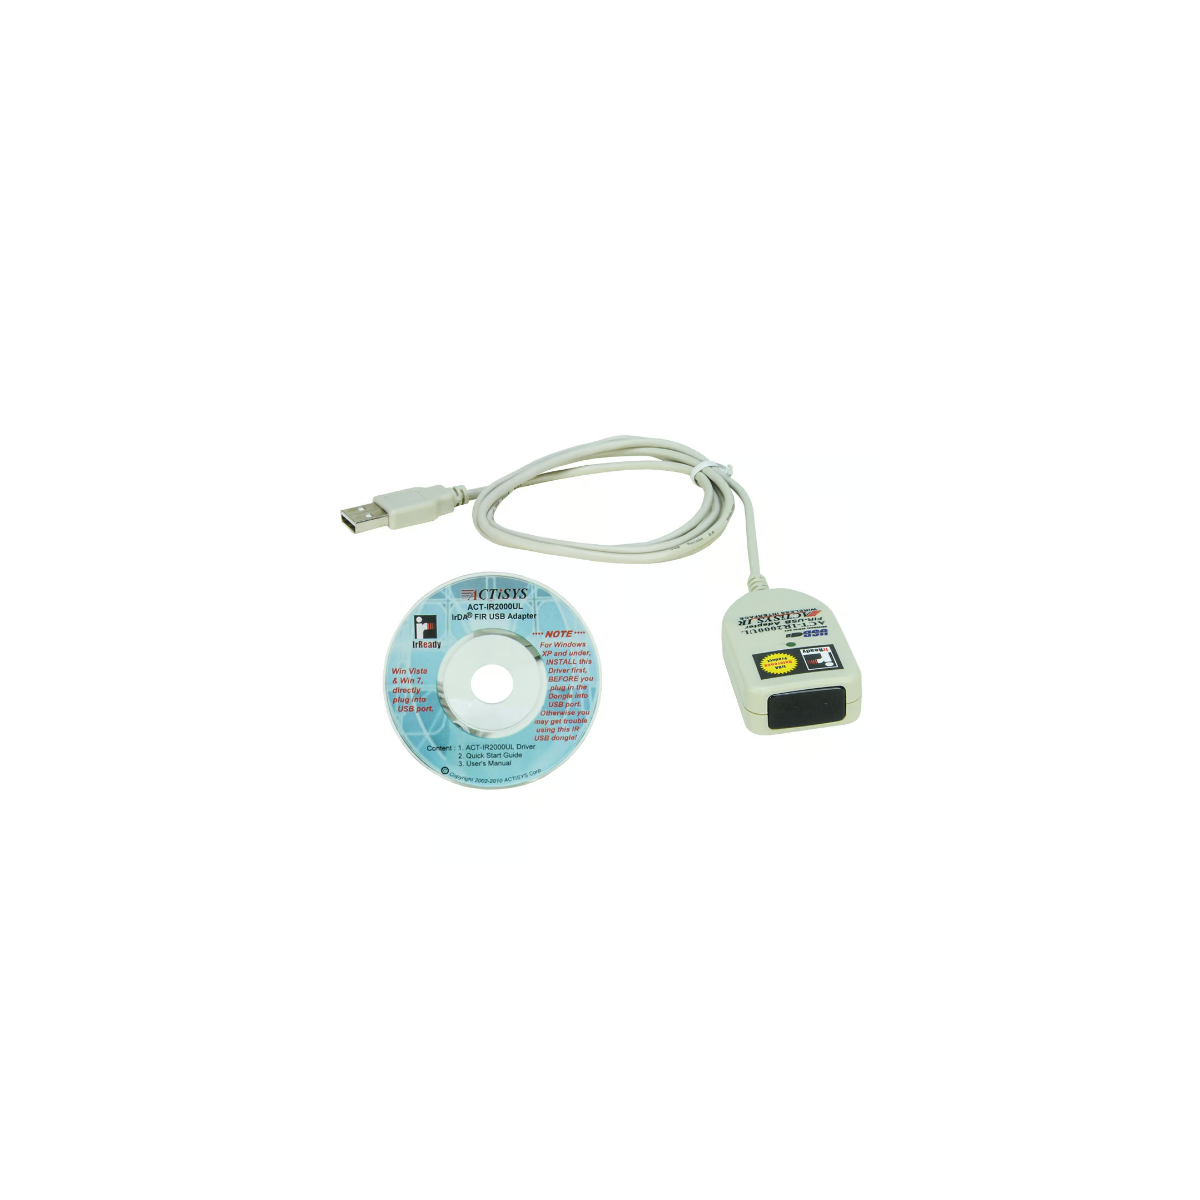 ZOLL USB IrDA Adapter